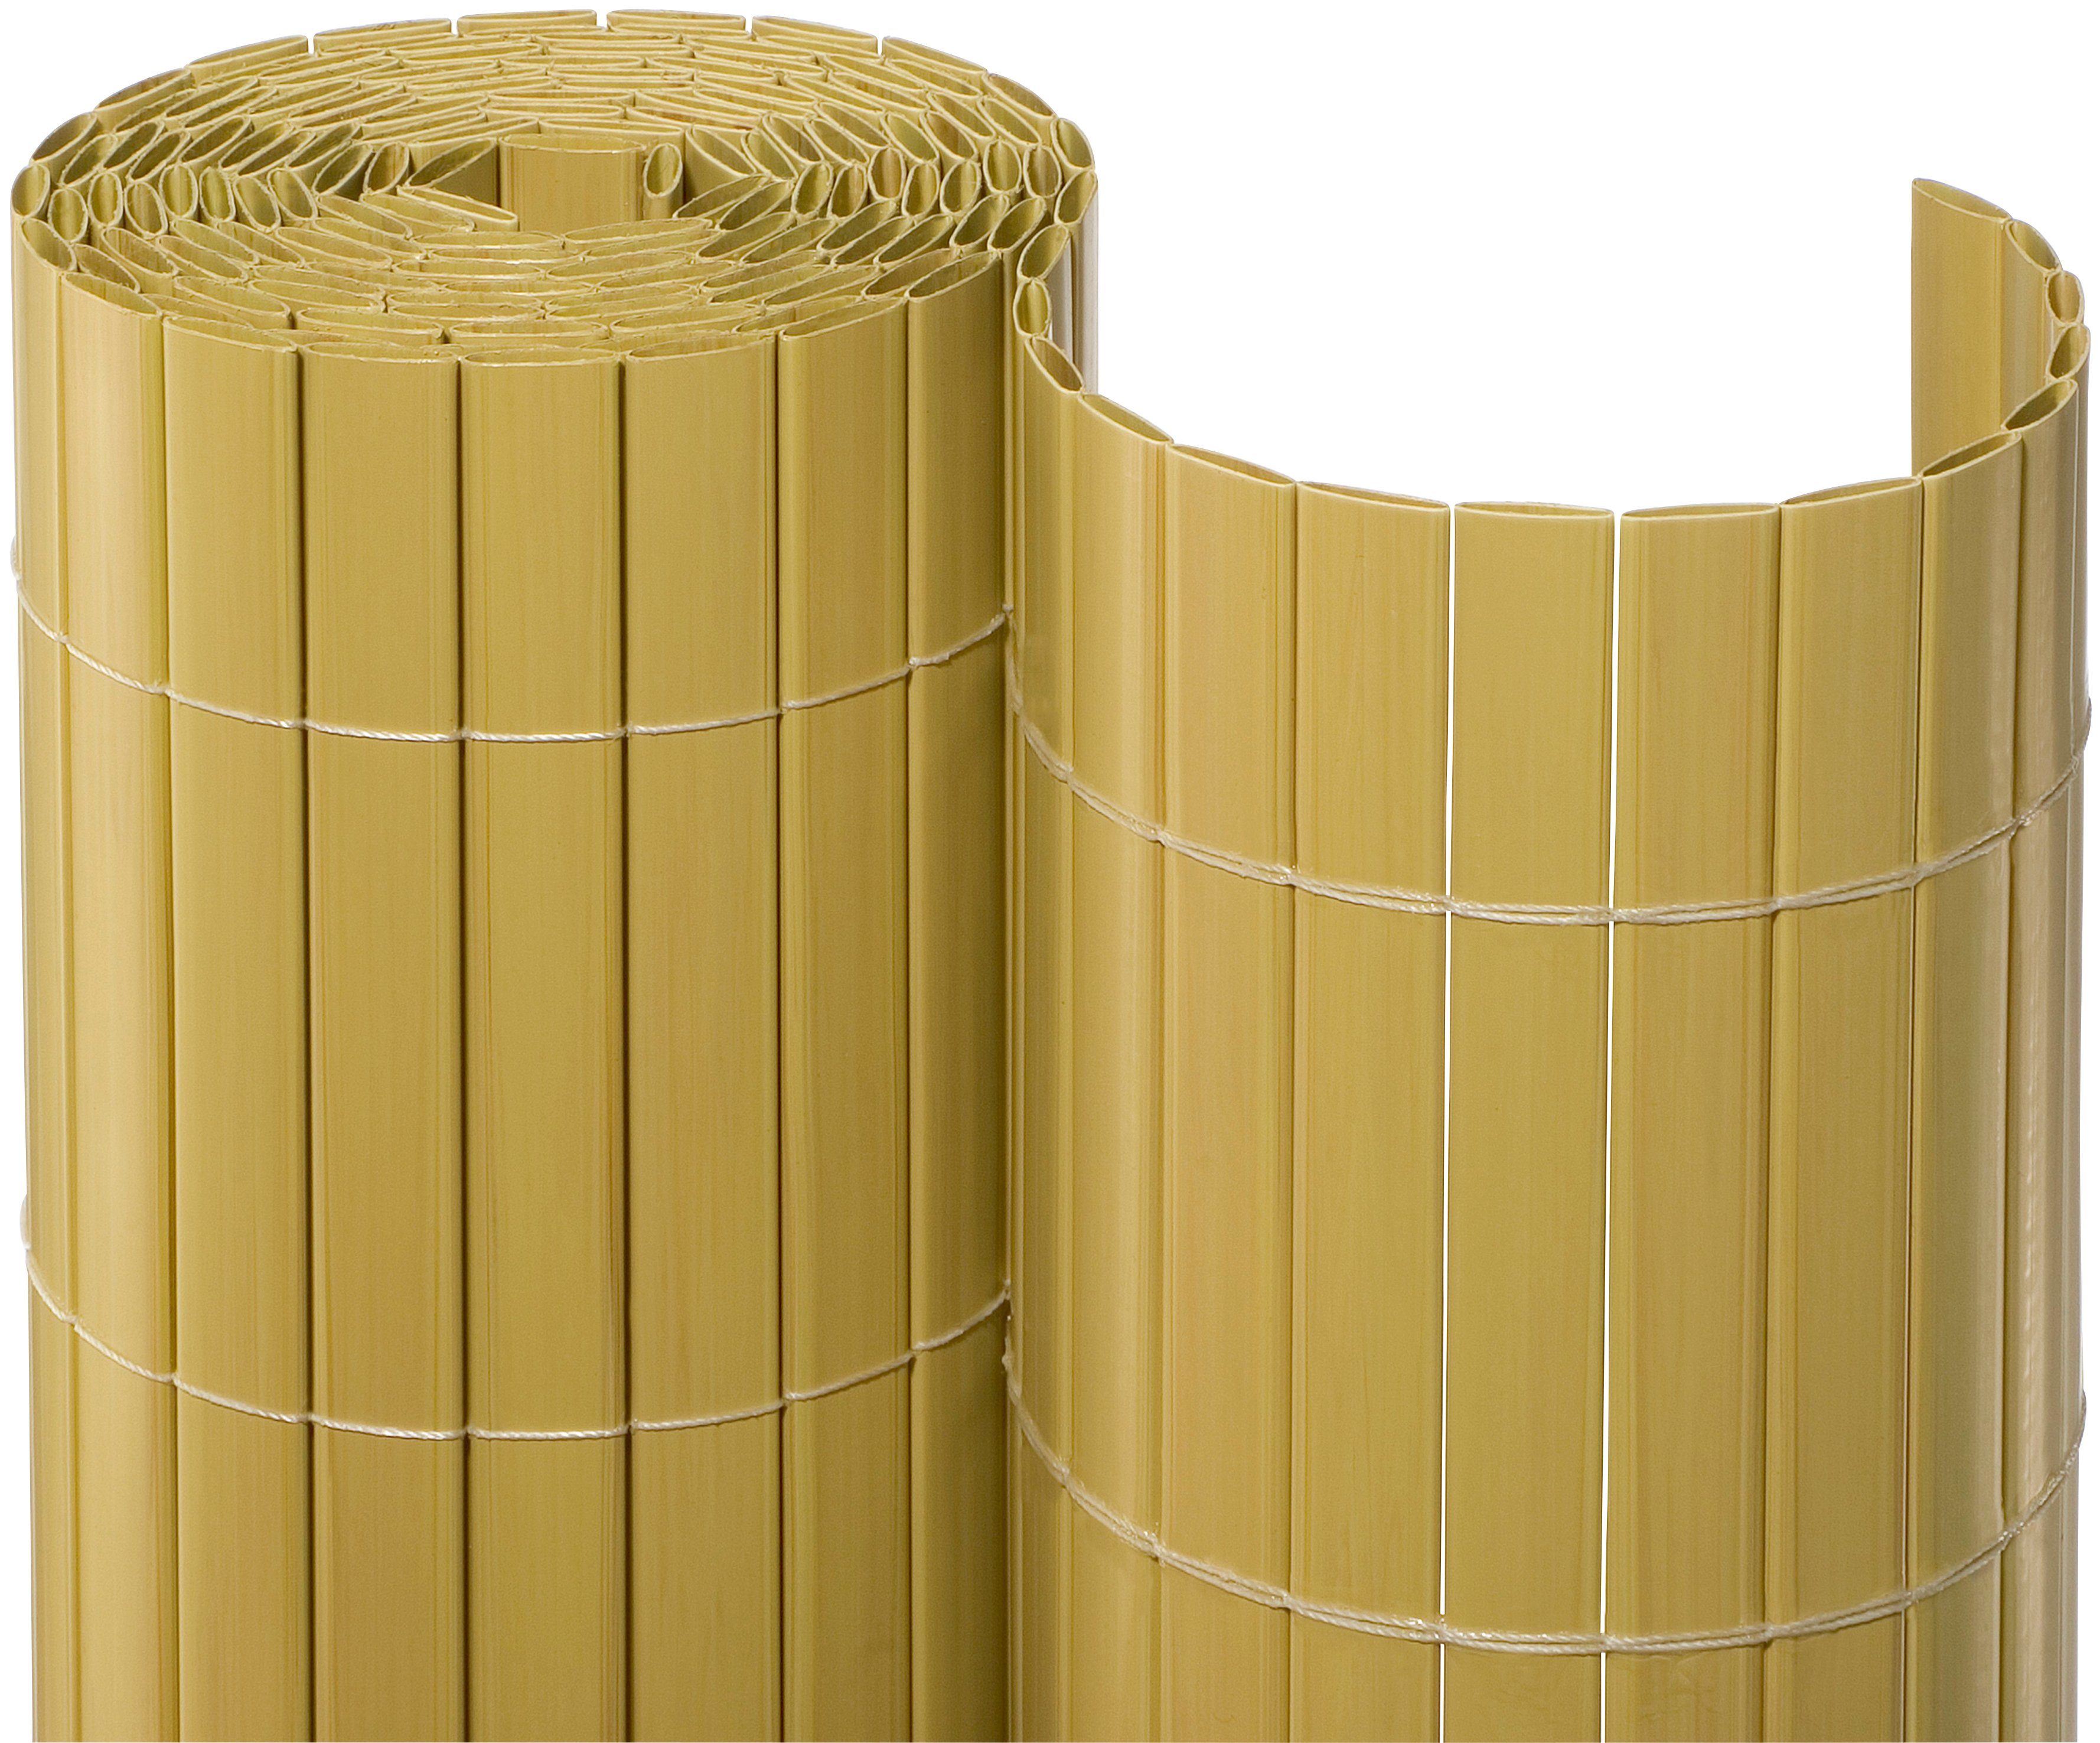 NOOR Balkonsichtschutz BxH: 3x1,8 Meter, bambusfarben online kaufen | OTTO